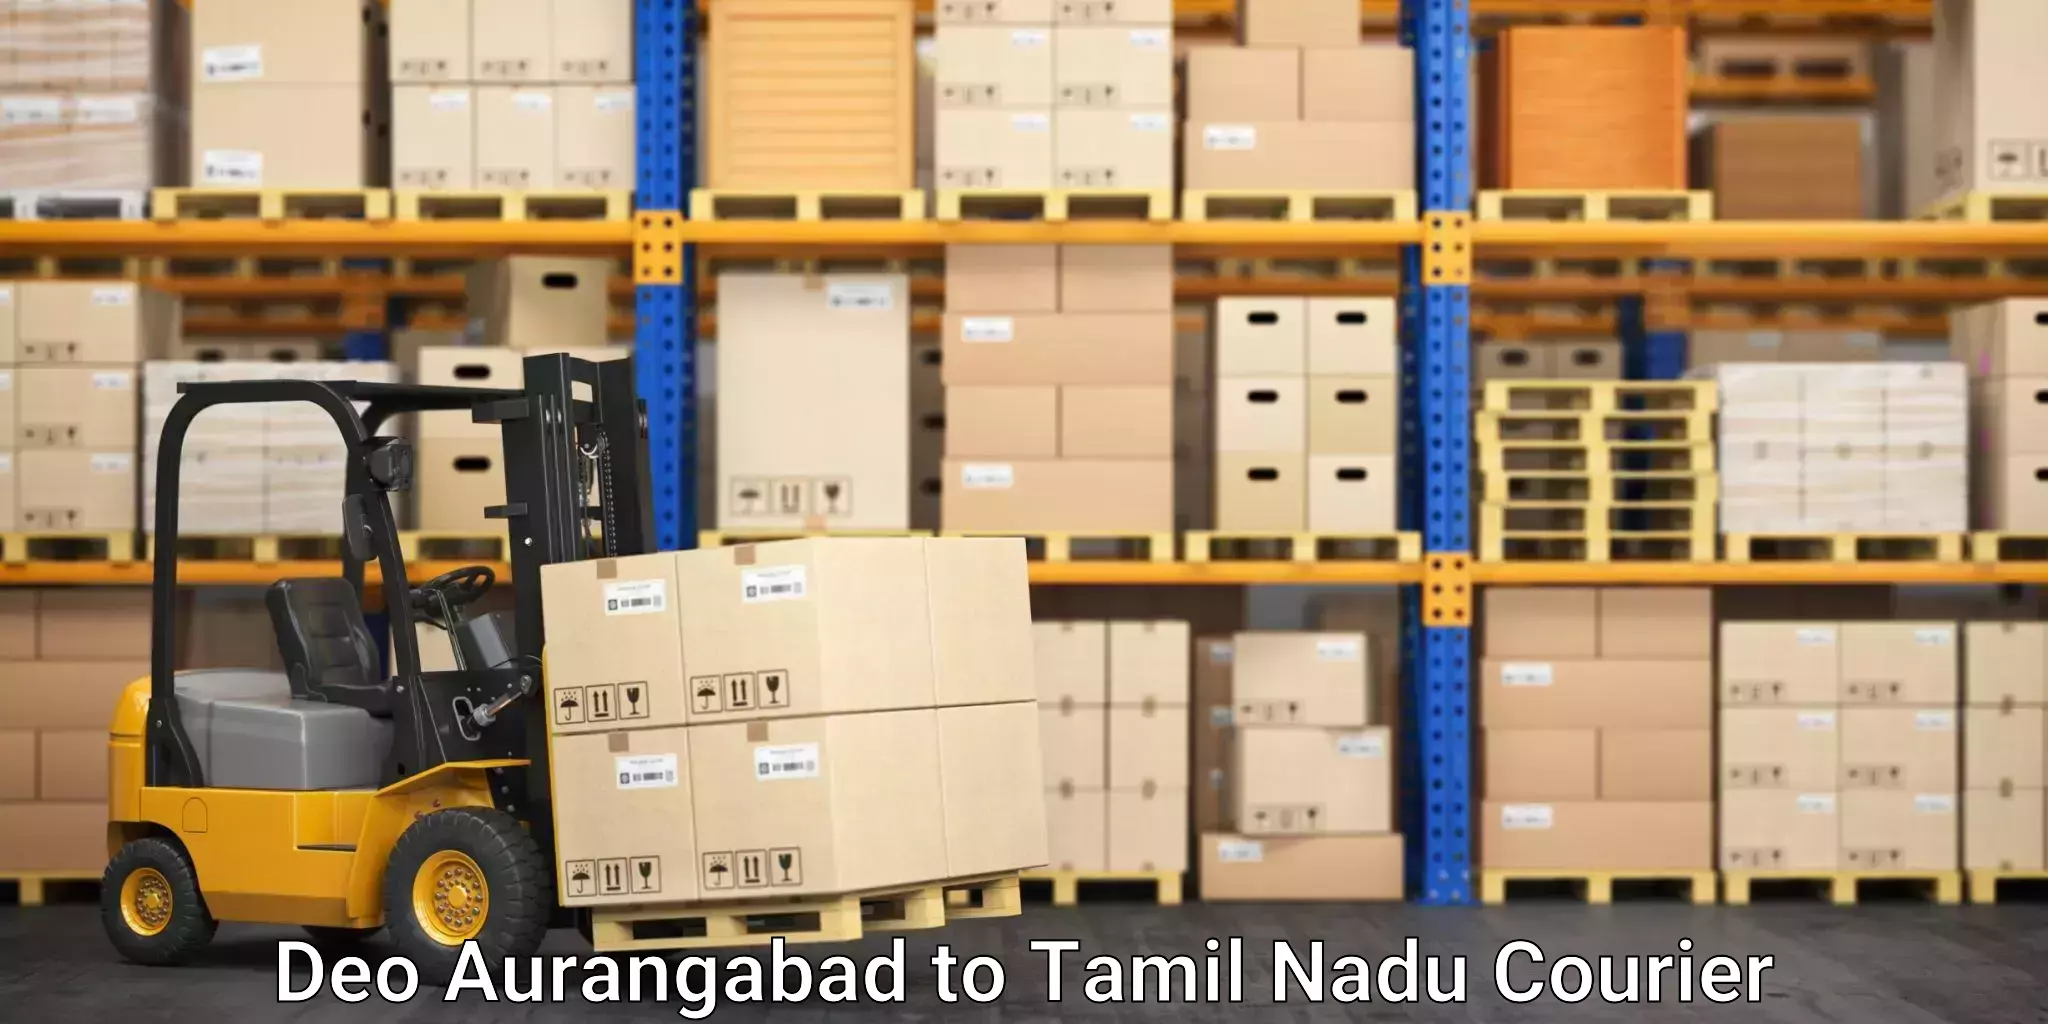 Safe home goods transport Deo Aurangabad to Tamil Nadu